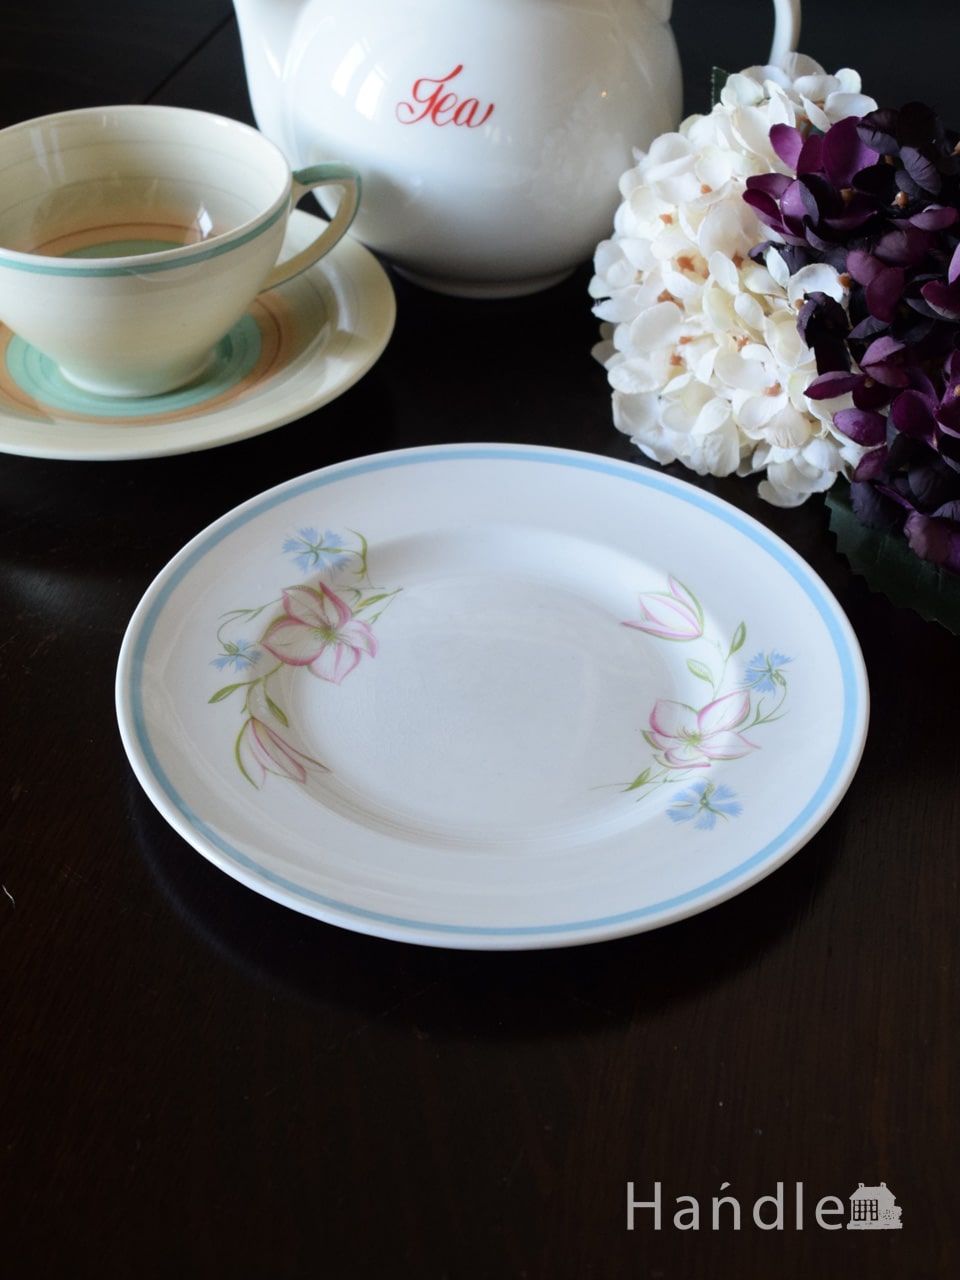 スージークーパー（Susie Cooper）のビンテージ食器、ピンクとブルーのお花のプレート (m-7235-z)